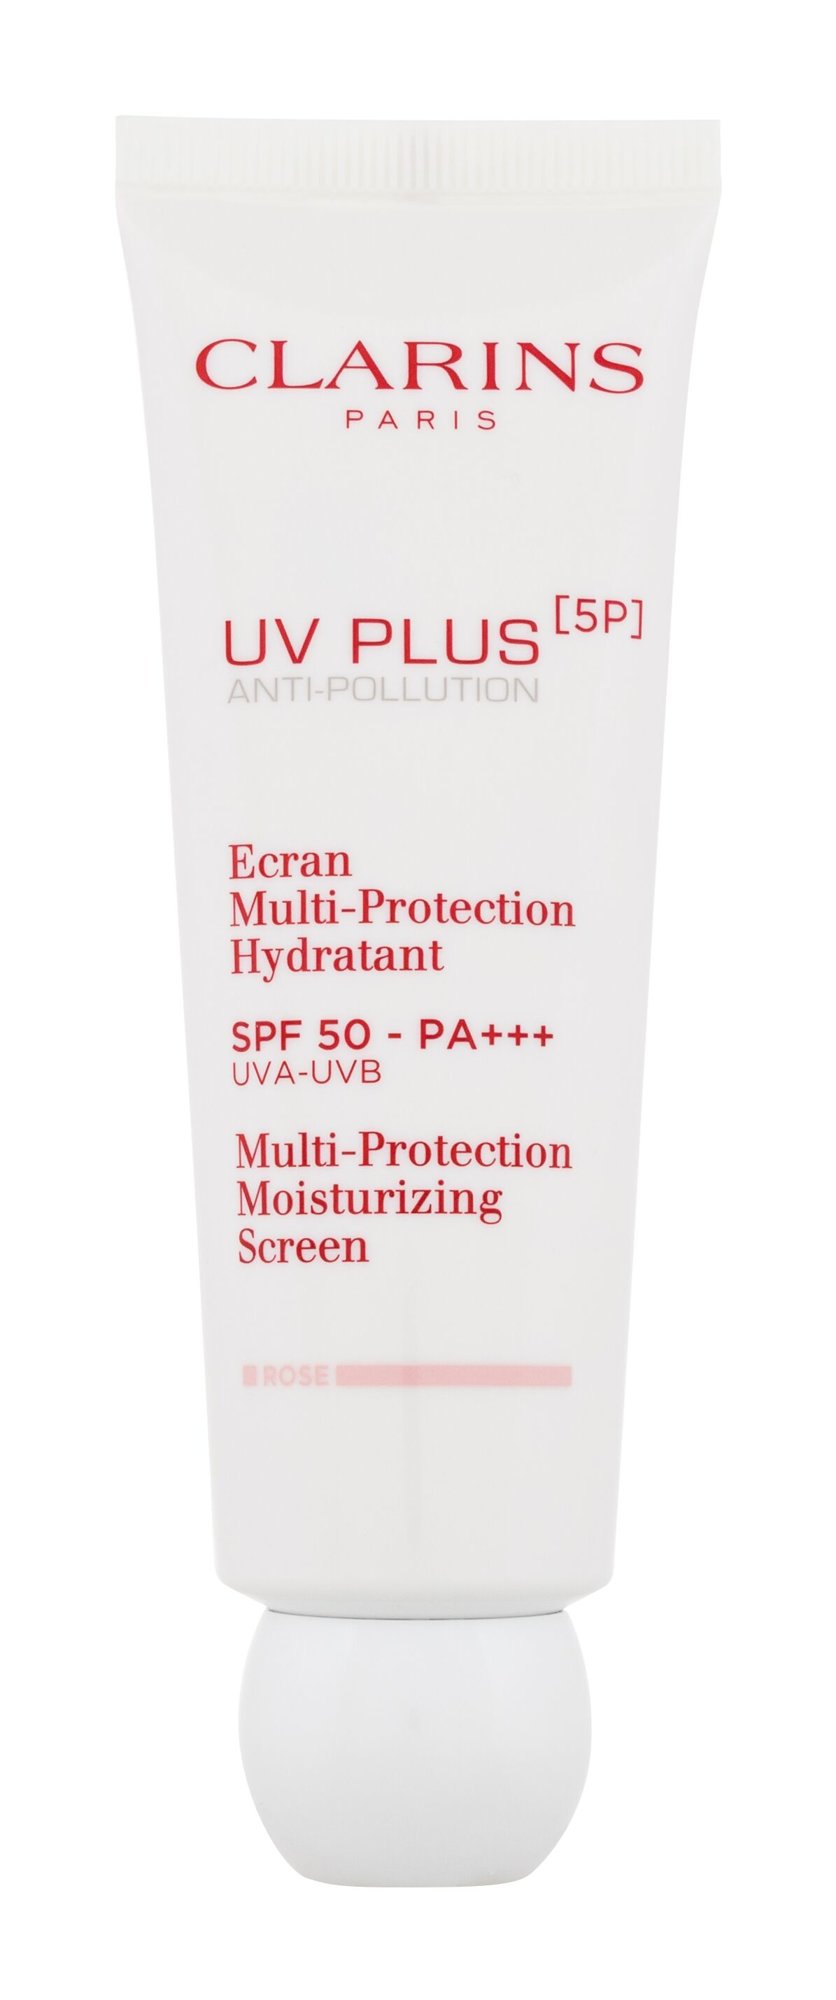 Clarins UV Plus 5P Multi-Protection Moisturizing Screen veido apsauga